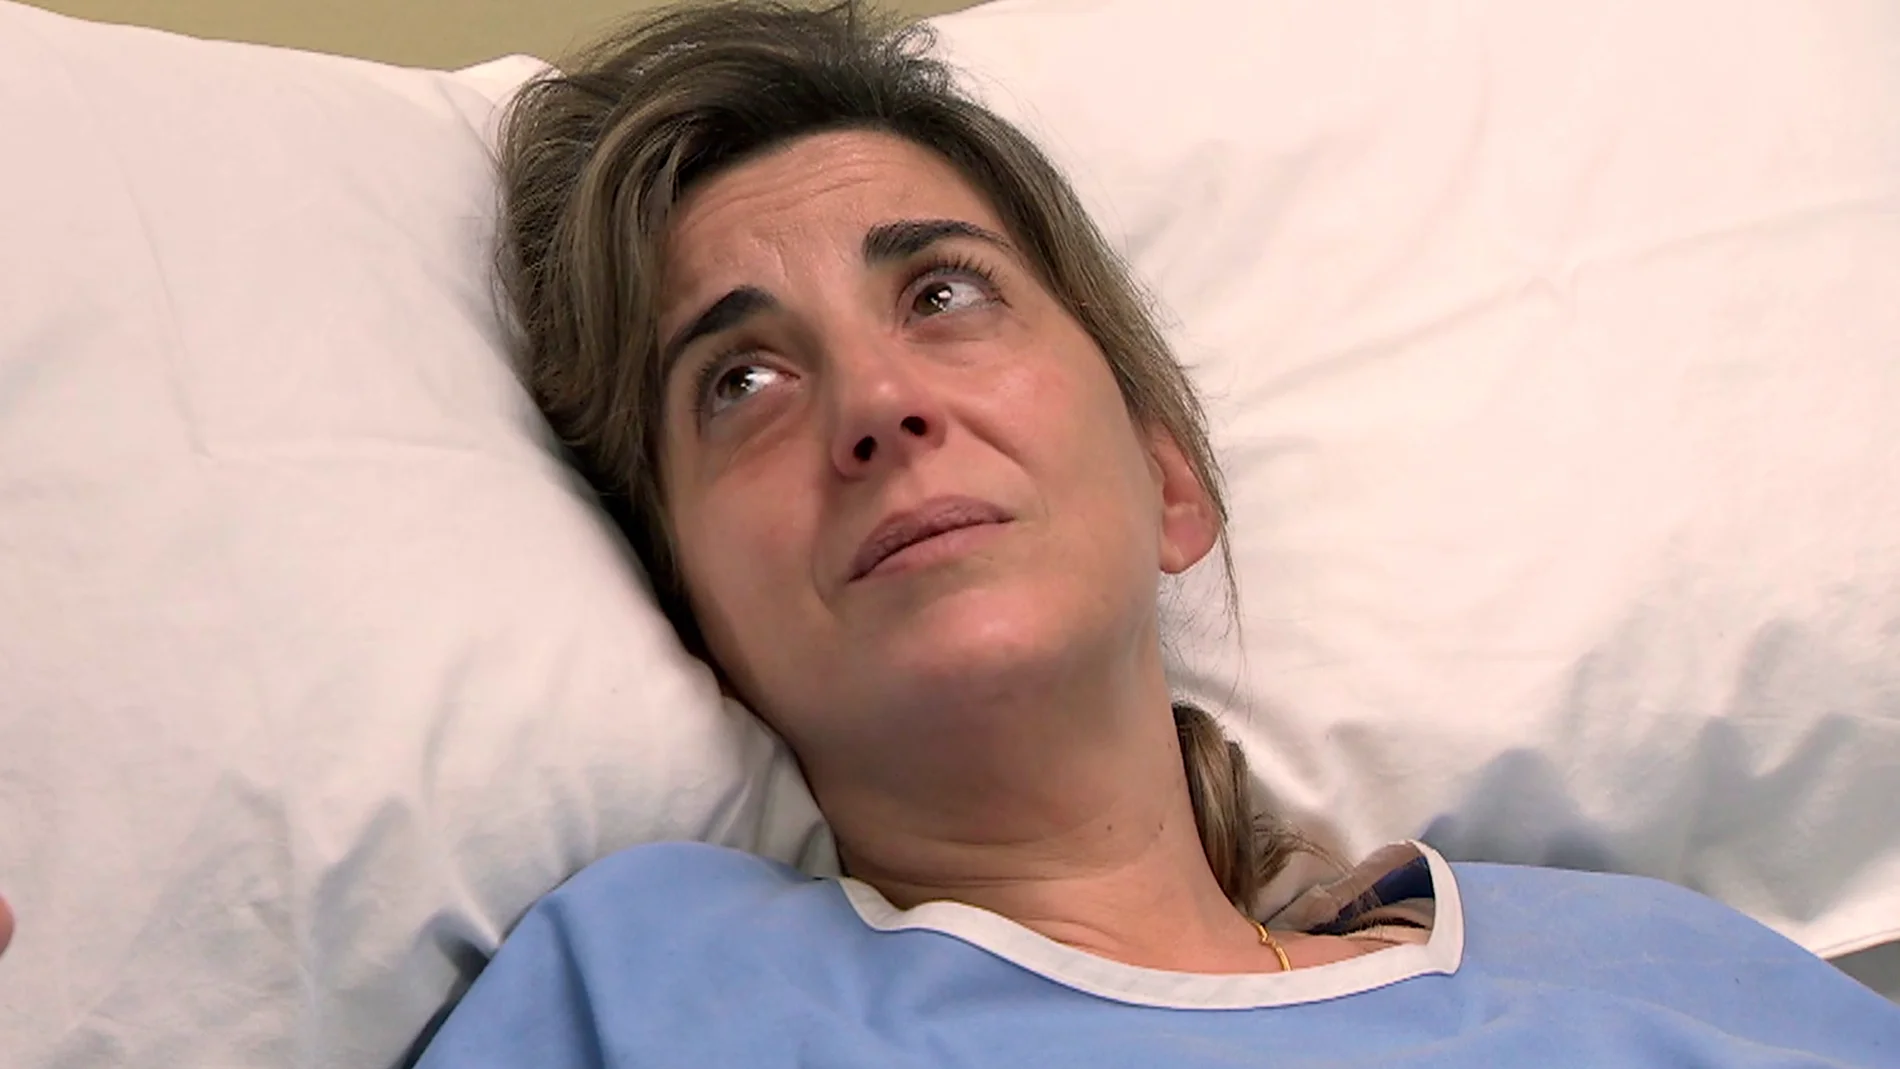 En el próximo capítulo de ‘Amar es para siempre’: Andrea visita a Lucrecia en el hospital